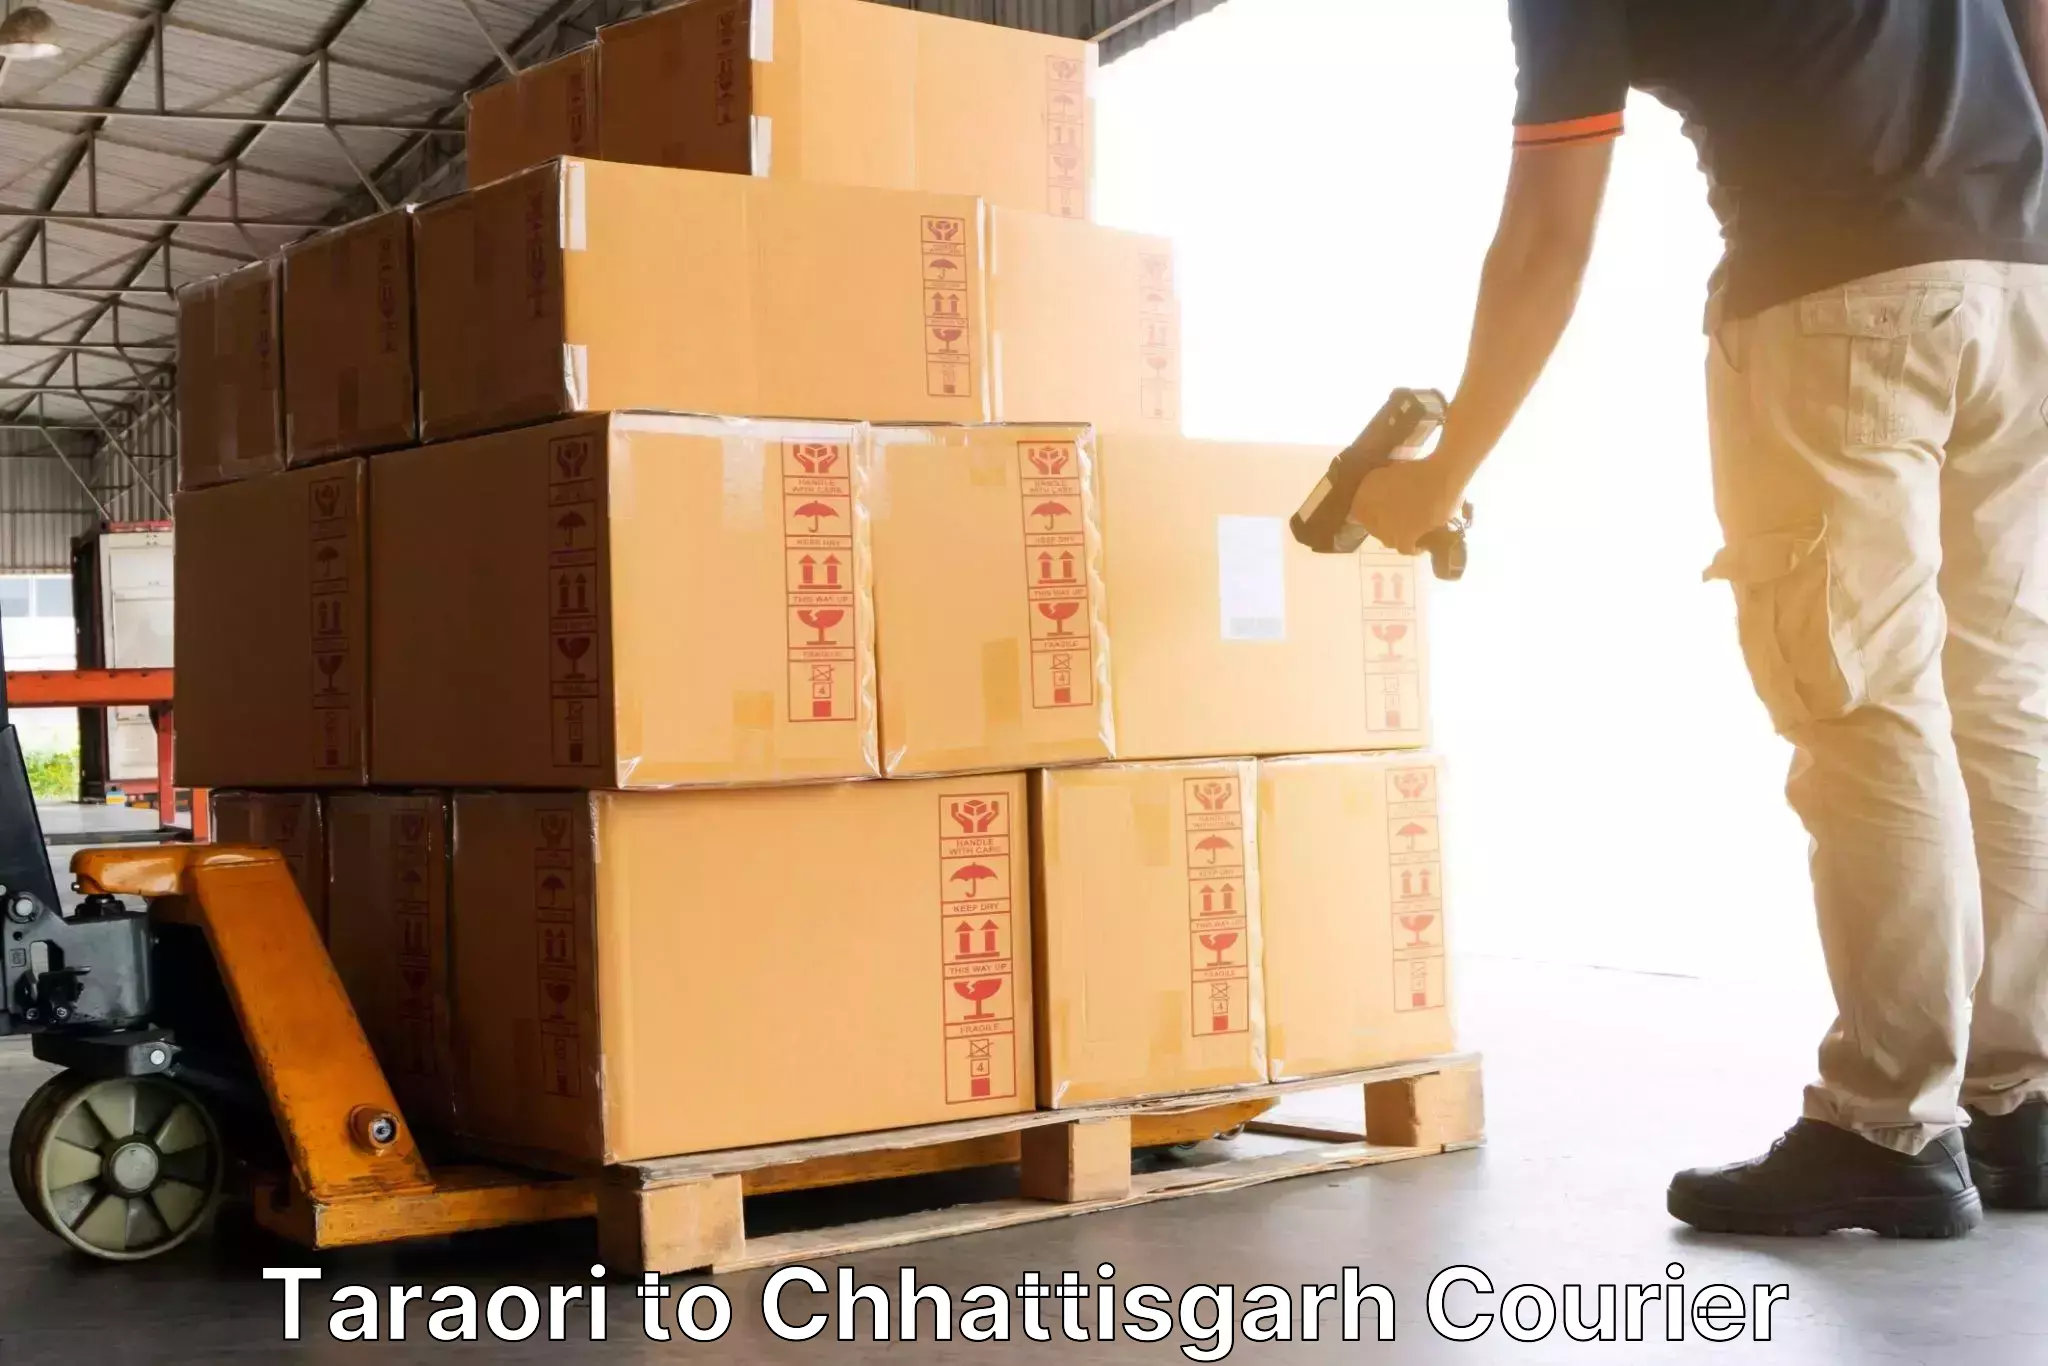 Speedy delivery service Taraori to Chhattisgarh